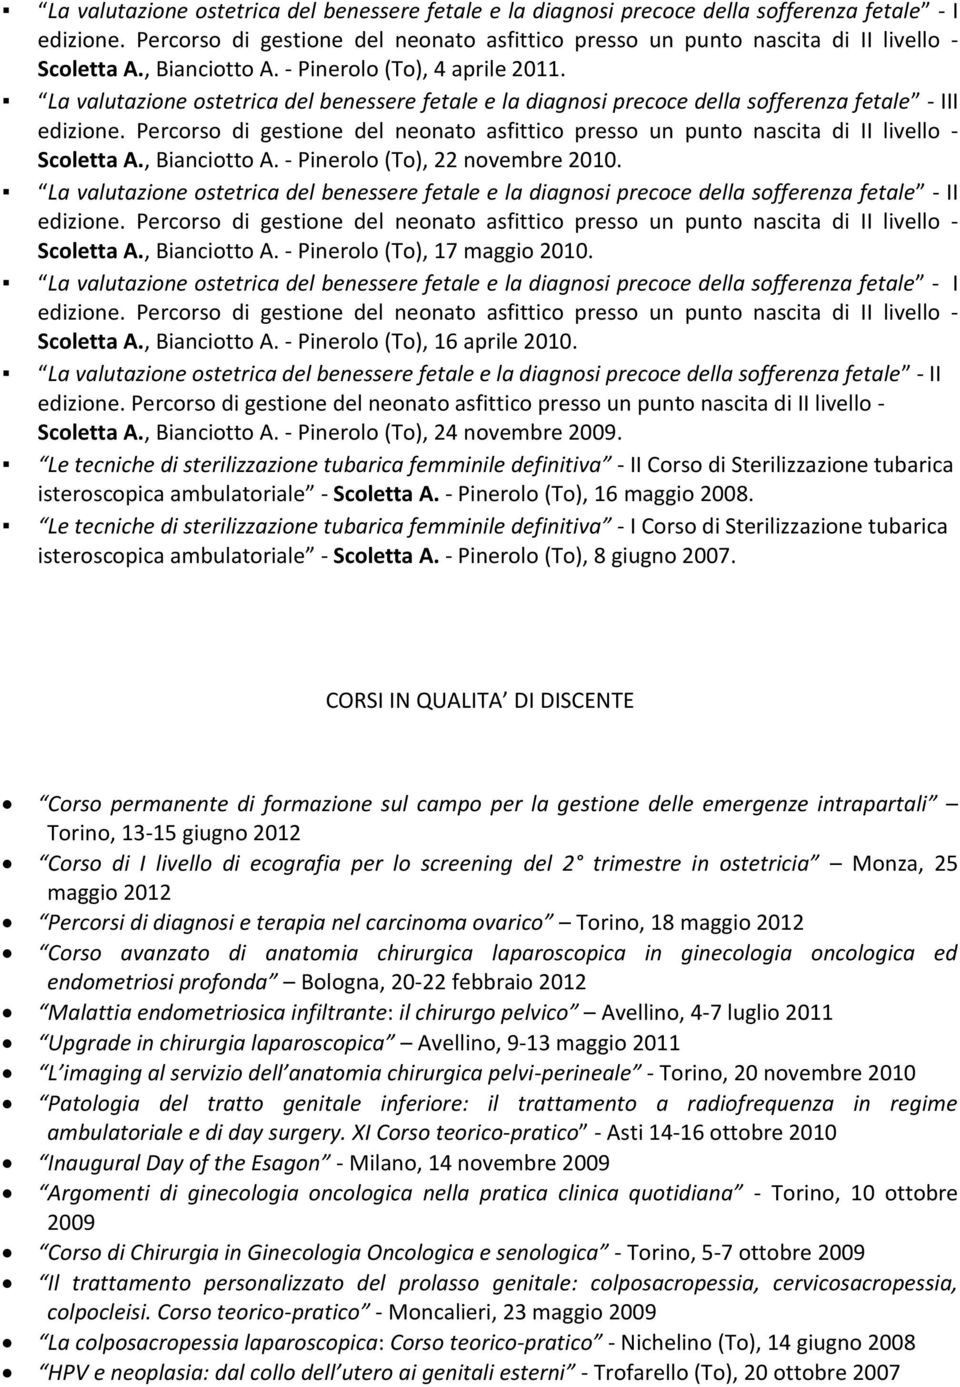 La valutazione ostetrica del benessere fetale e la diagnosi precoce della sofferenza fetale - II Scoletta A., Bianciotto A. - Pinerolo (To), 17 maggio 2010.